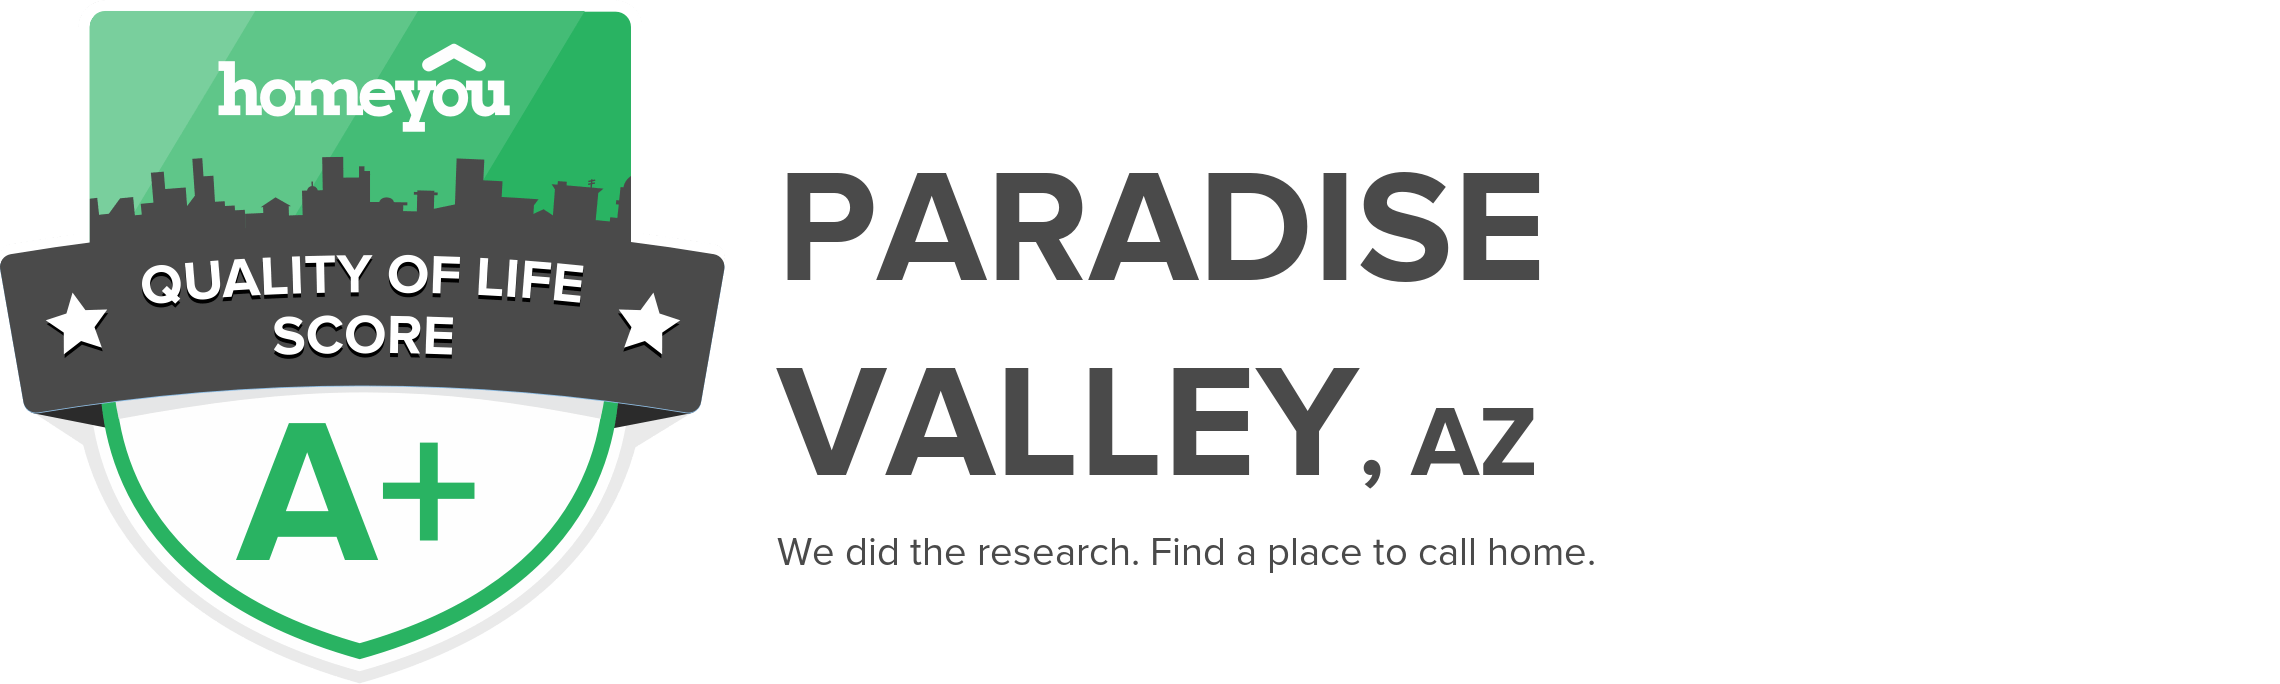 Paradise Valley, AZ